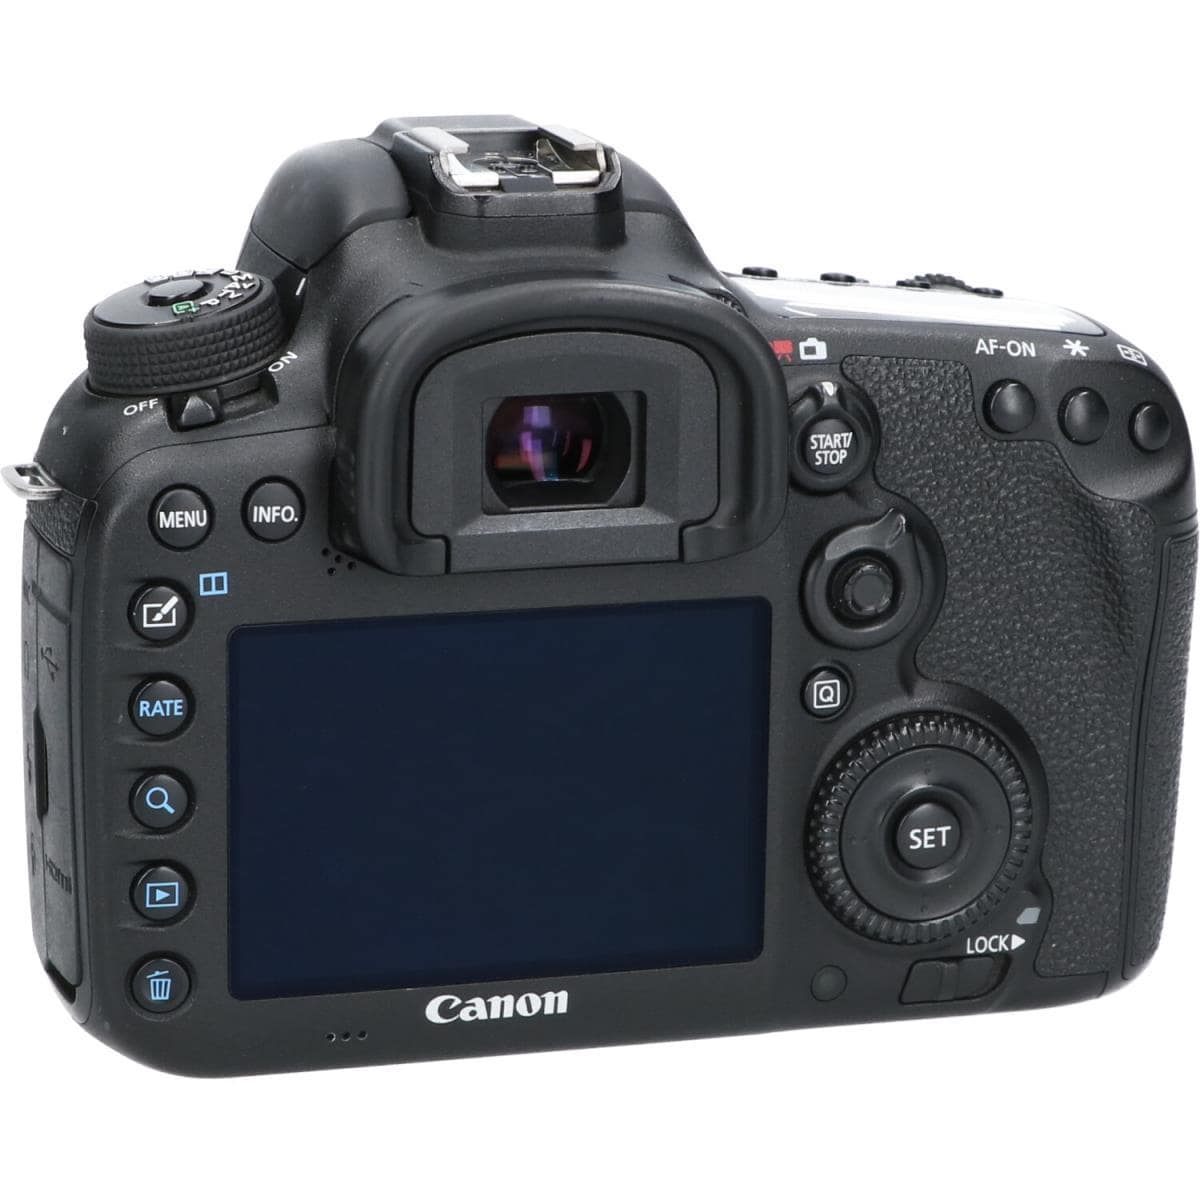 Canon EOS 7D MARK II